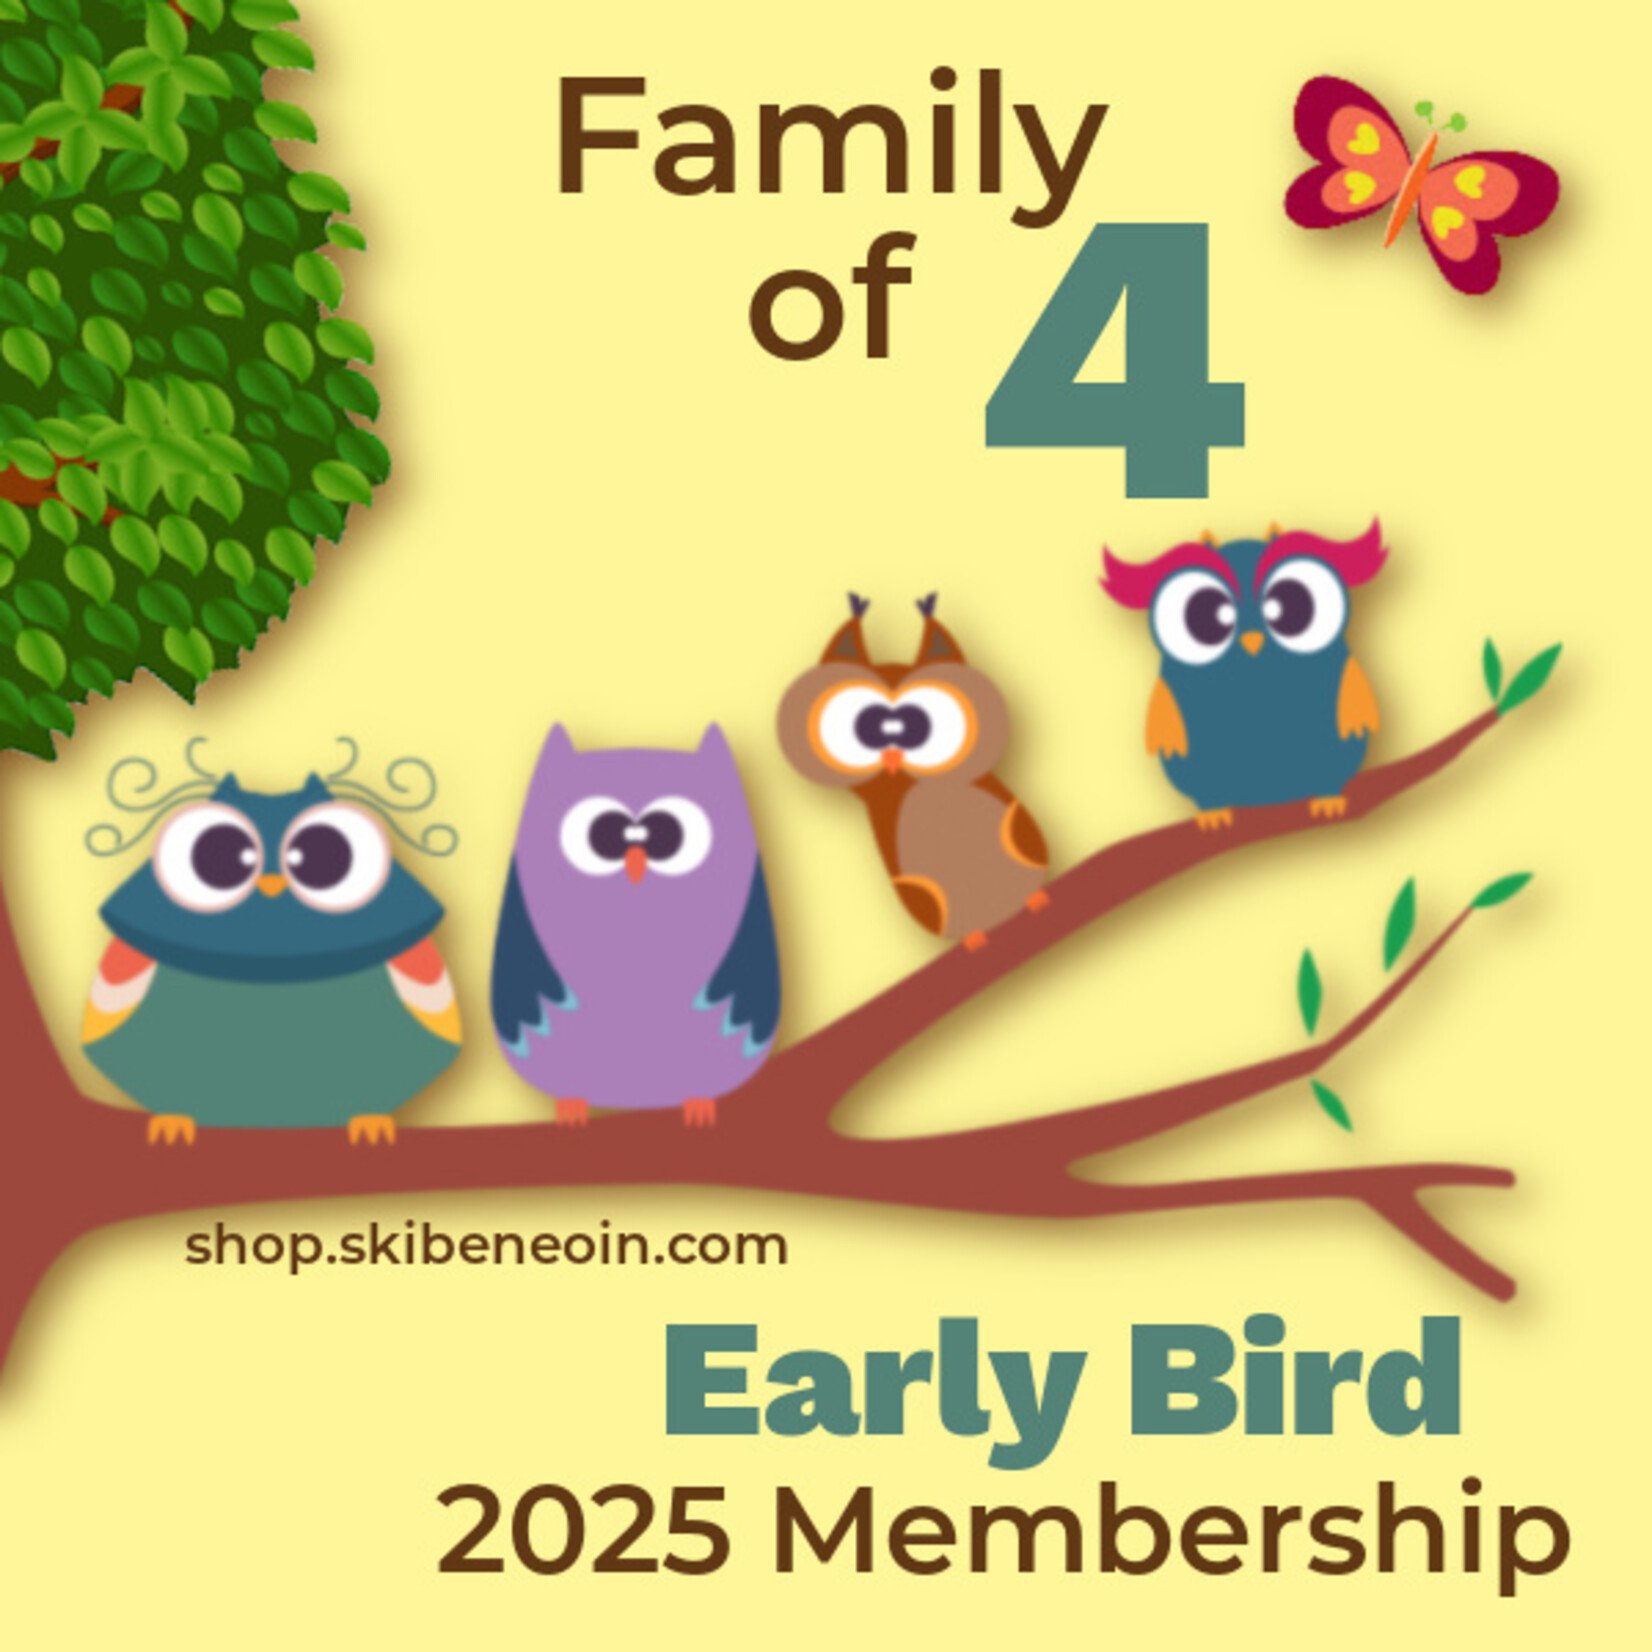 Early Bird Family Membership 2025